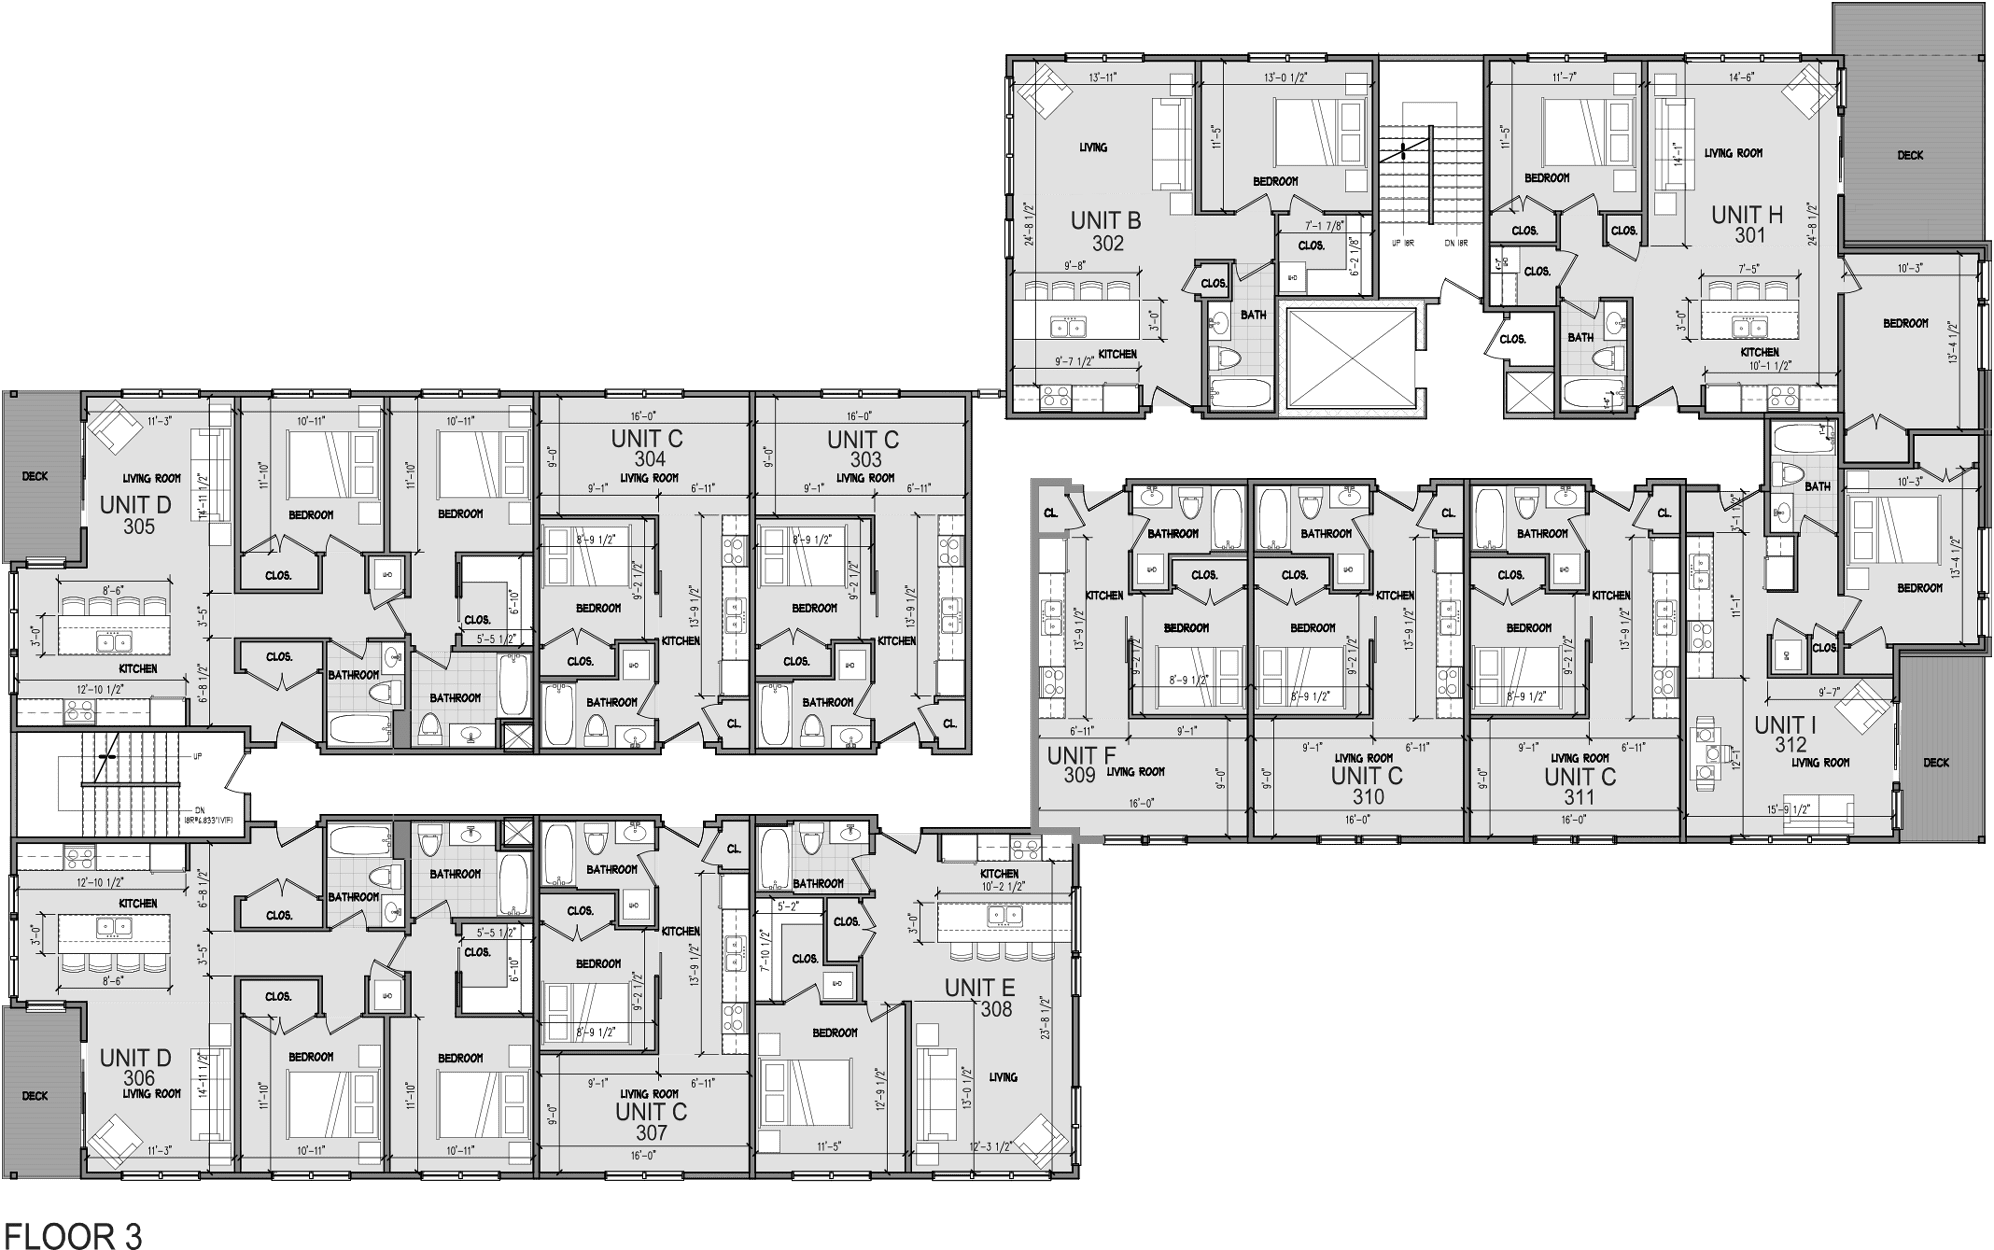 Level 3 Floor Plan